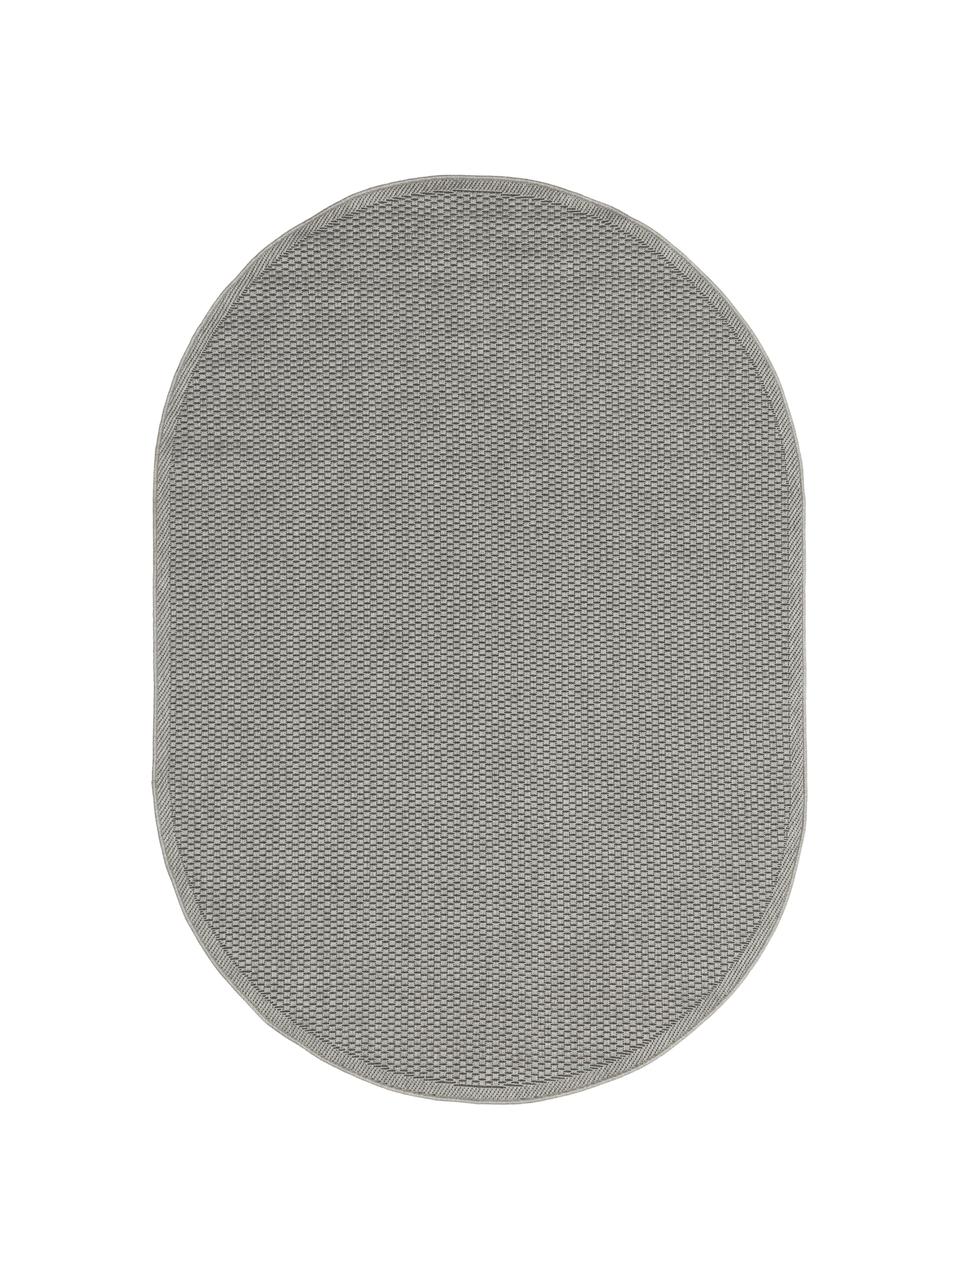 Ovale In- & outdoor vloerkleed Toronto in grijs, 100% polypropyleen, Grijs, B 160 x L 230 cm (maat M)